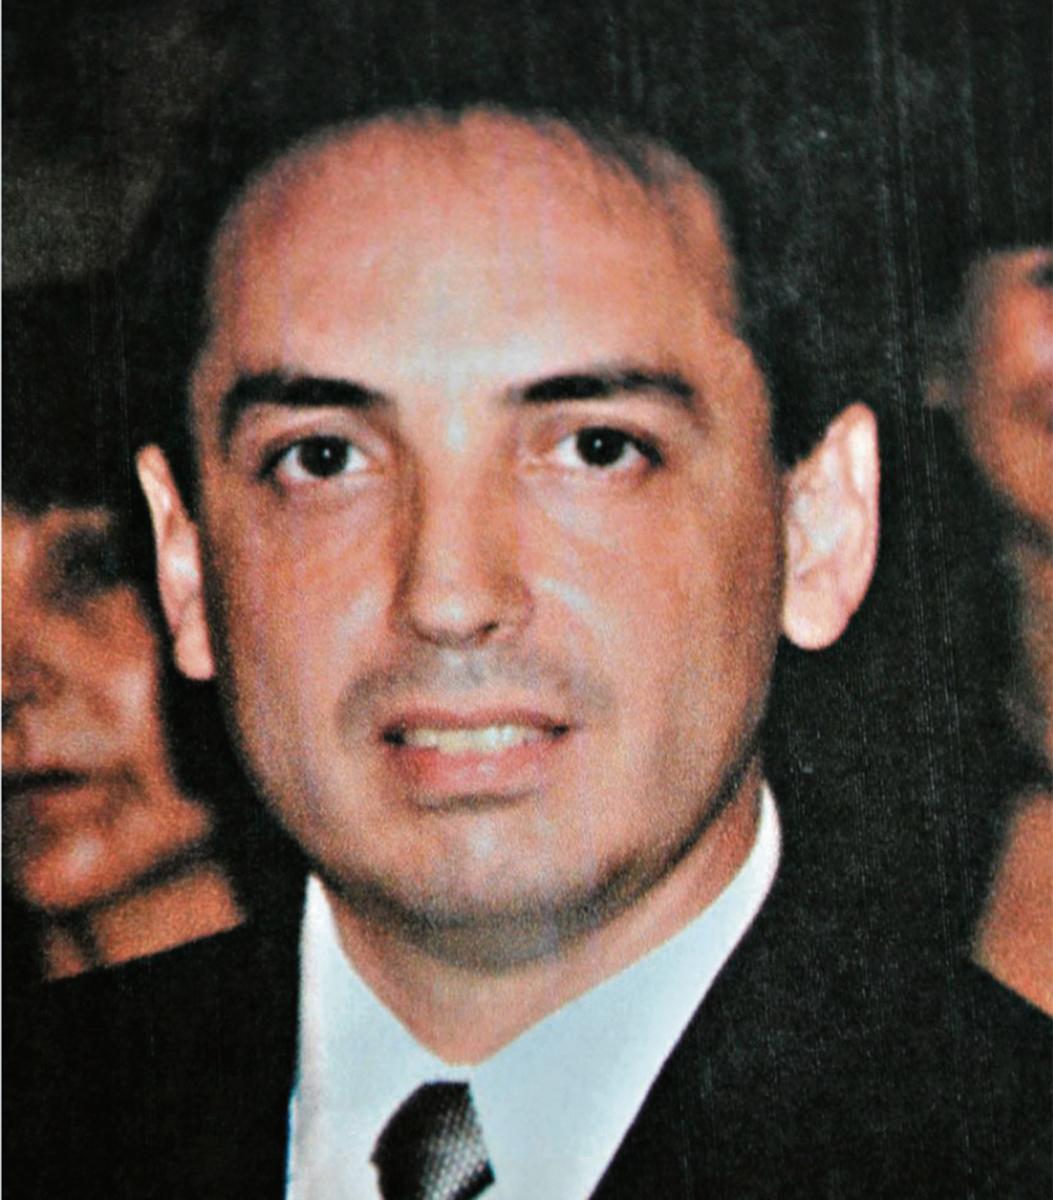 VÍCTIMA. Jorge Matteucci tenía 42 años cuando fue asesinado.